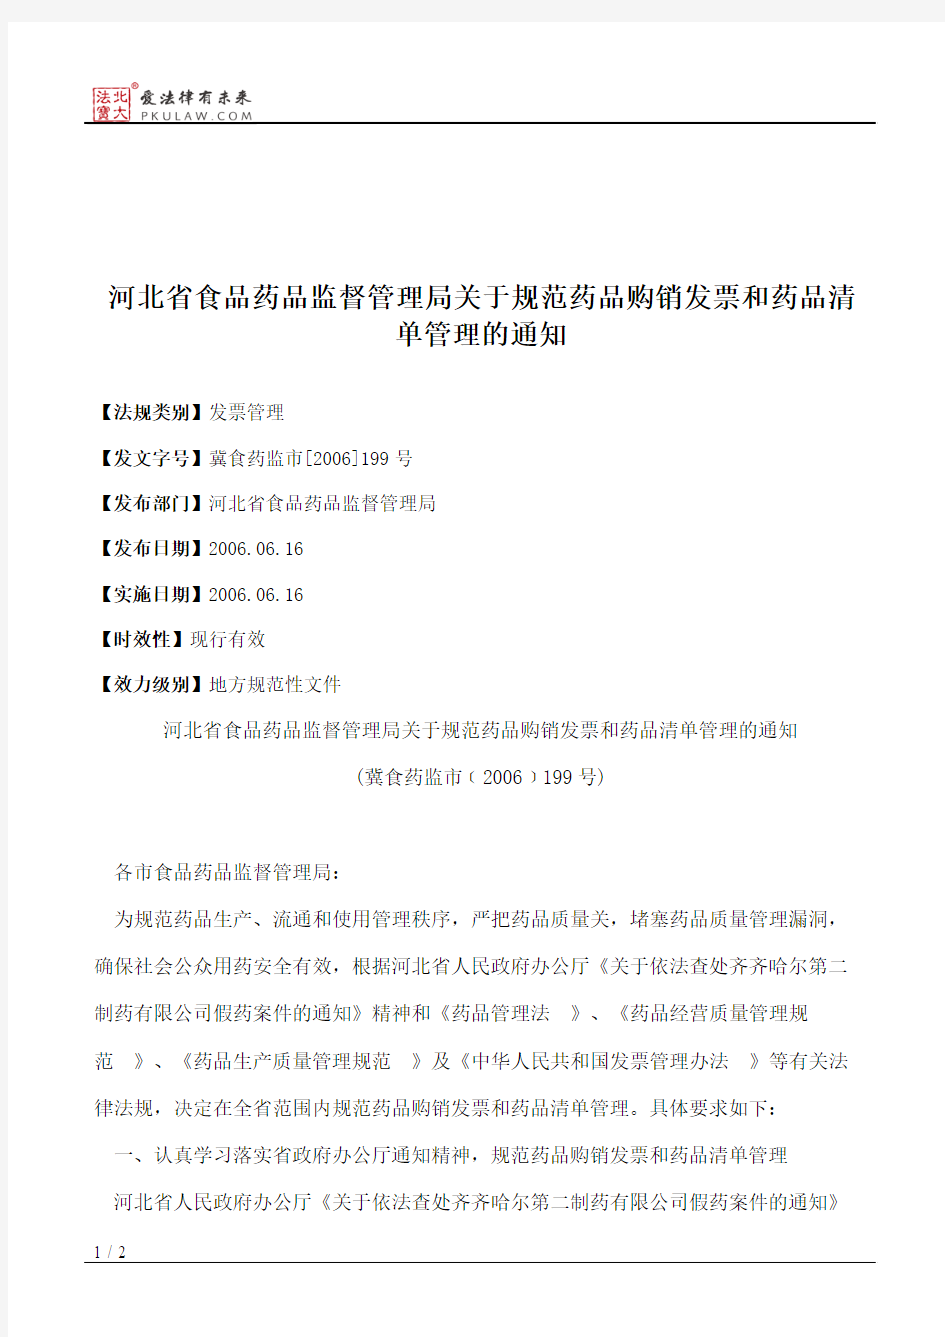 河北省食品药品监督管理局关于规范药品购销发票和药品清单管理的通知